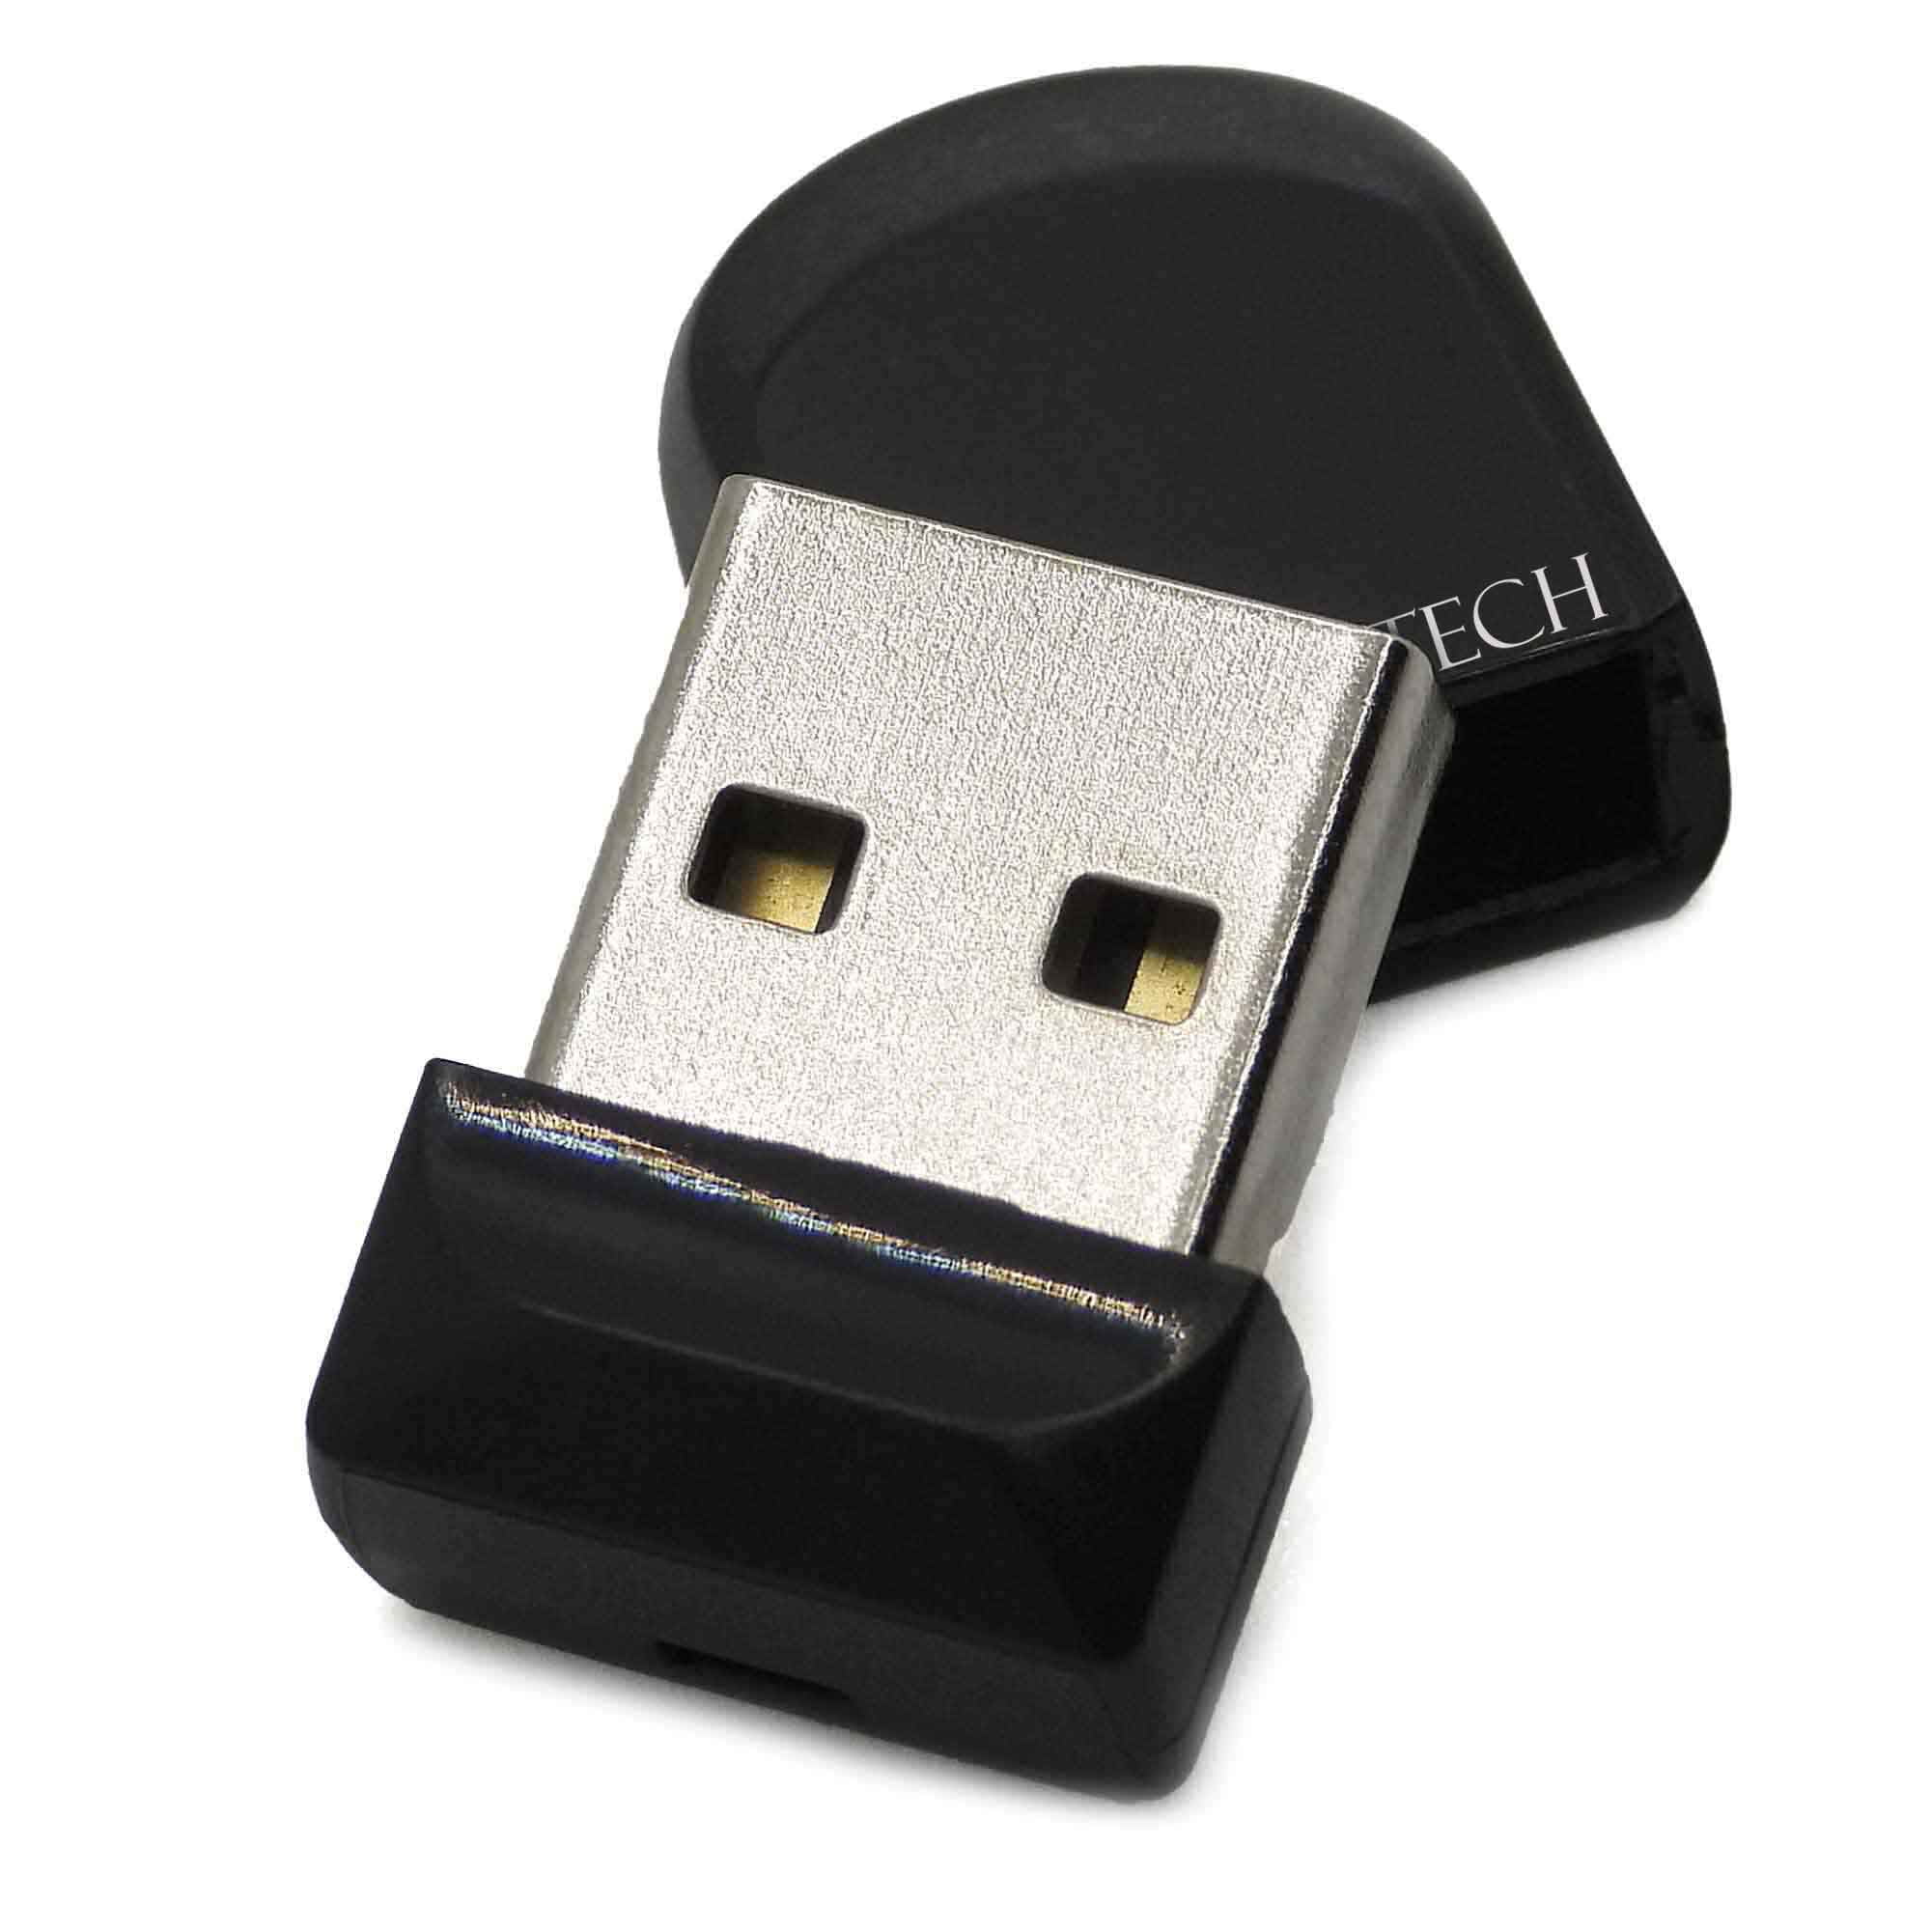 Flash Drive 64GB Memory Stick Mini USB 2.0 Flash Drive Walmart.com